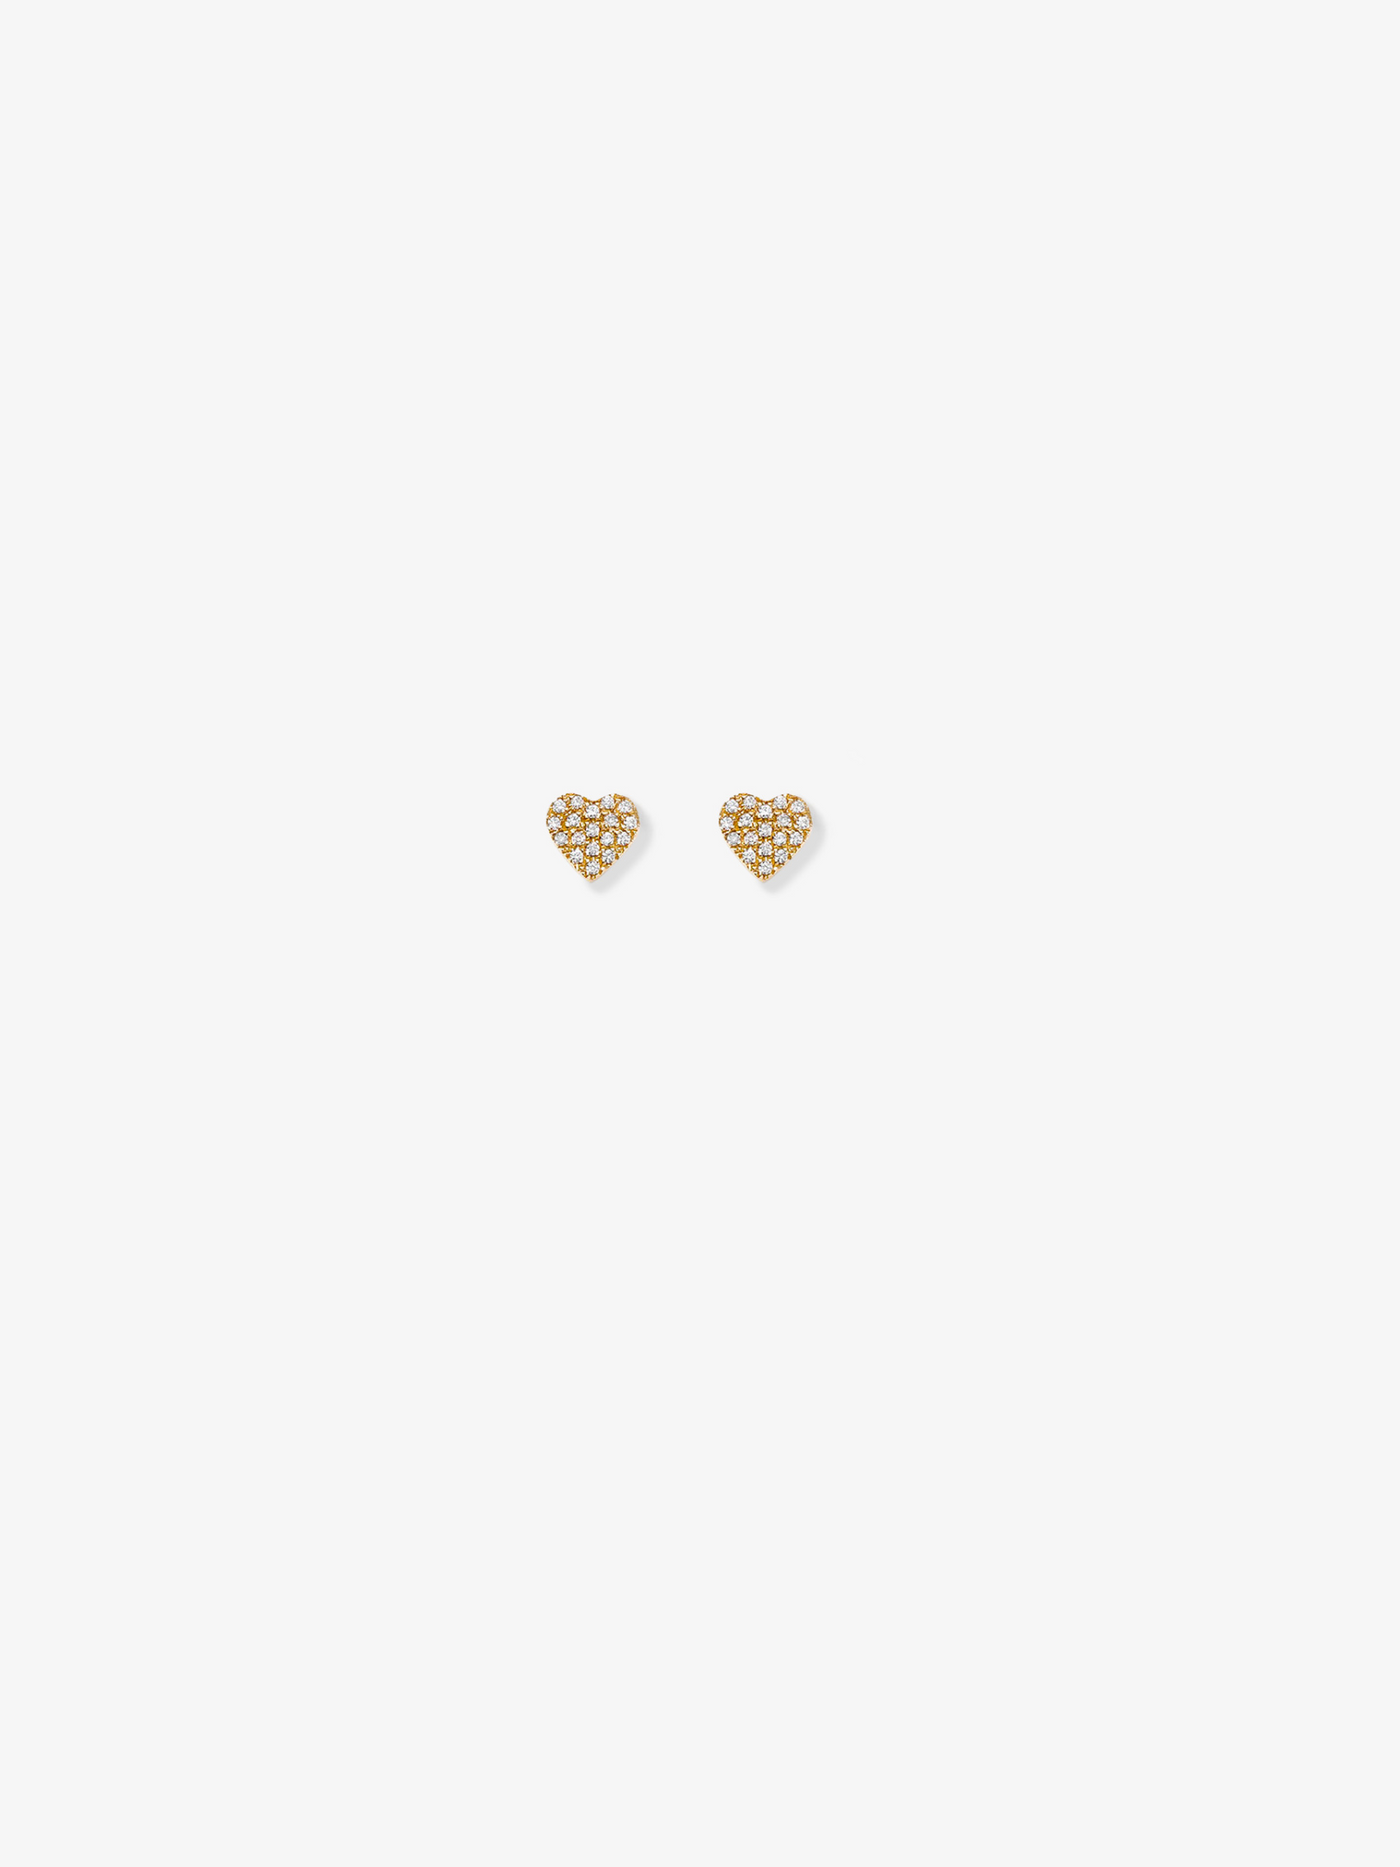 Heart Stud Earrings in Diamonds and 18k Gold